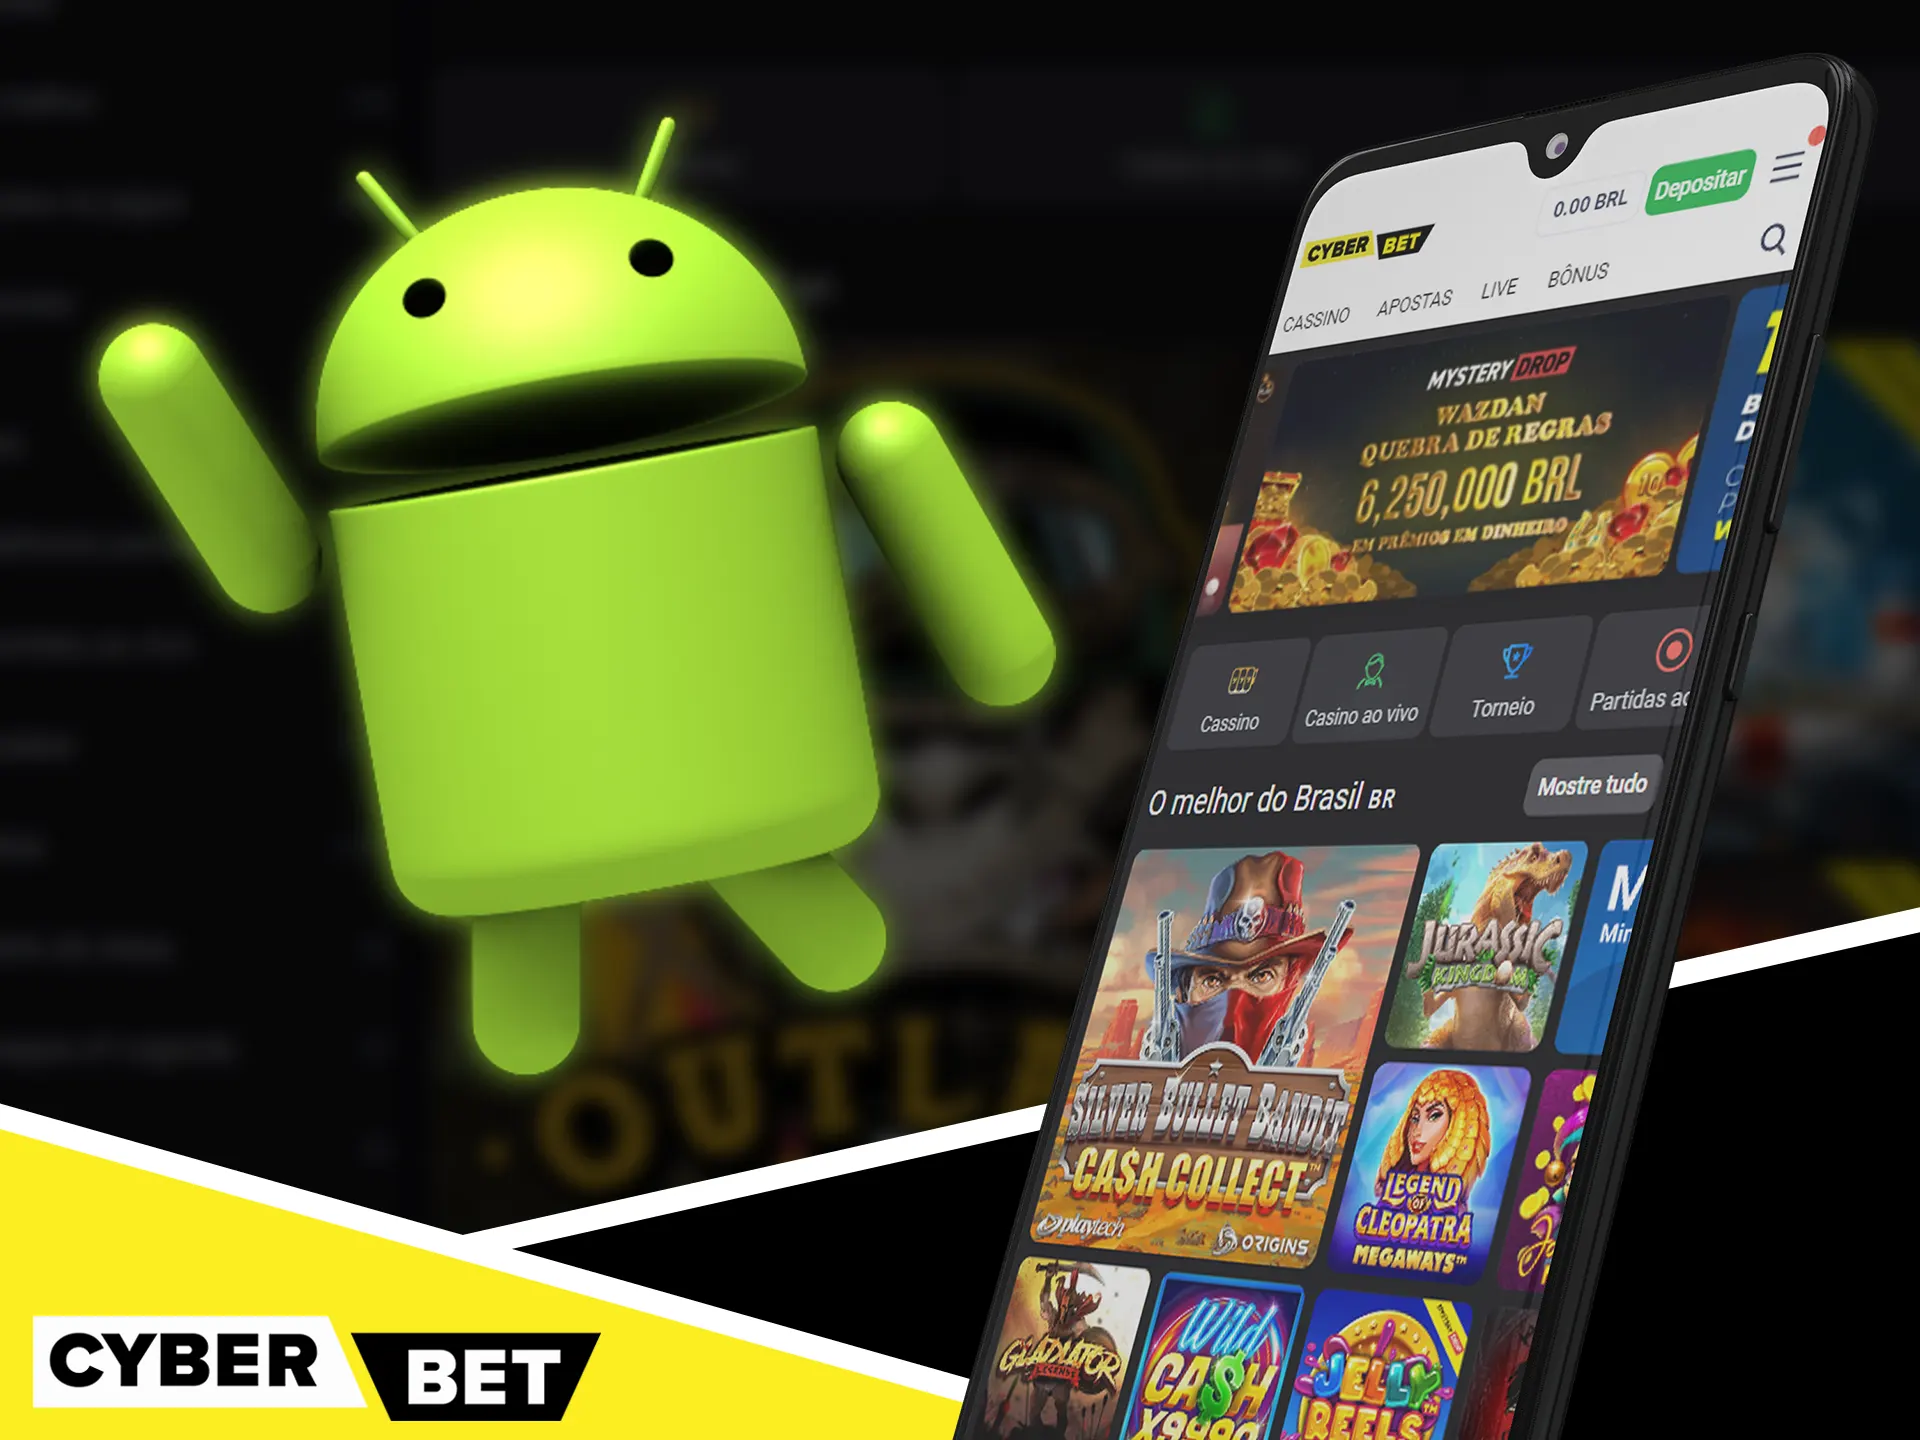 Verifique a lista de dispositivos Android compatíveis com o Cyber Bet.